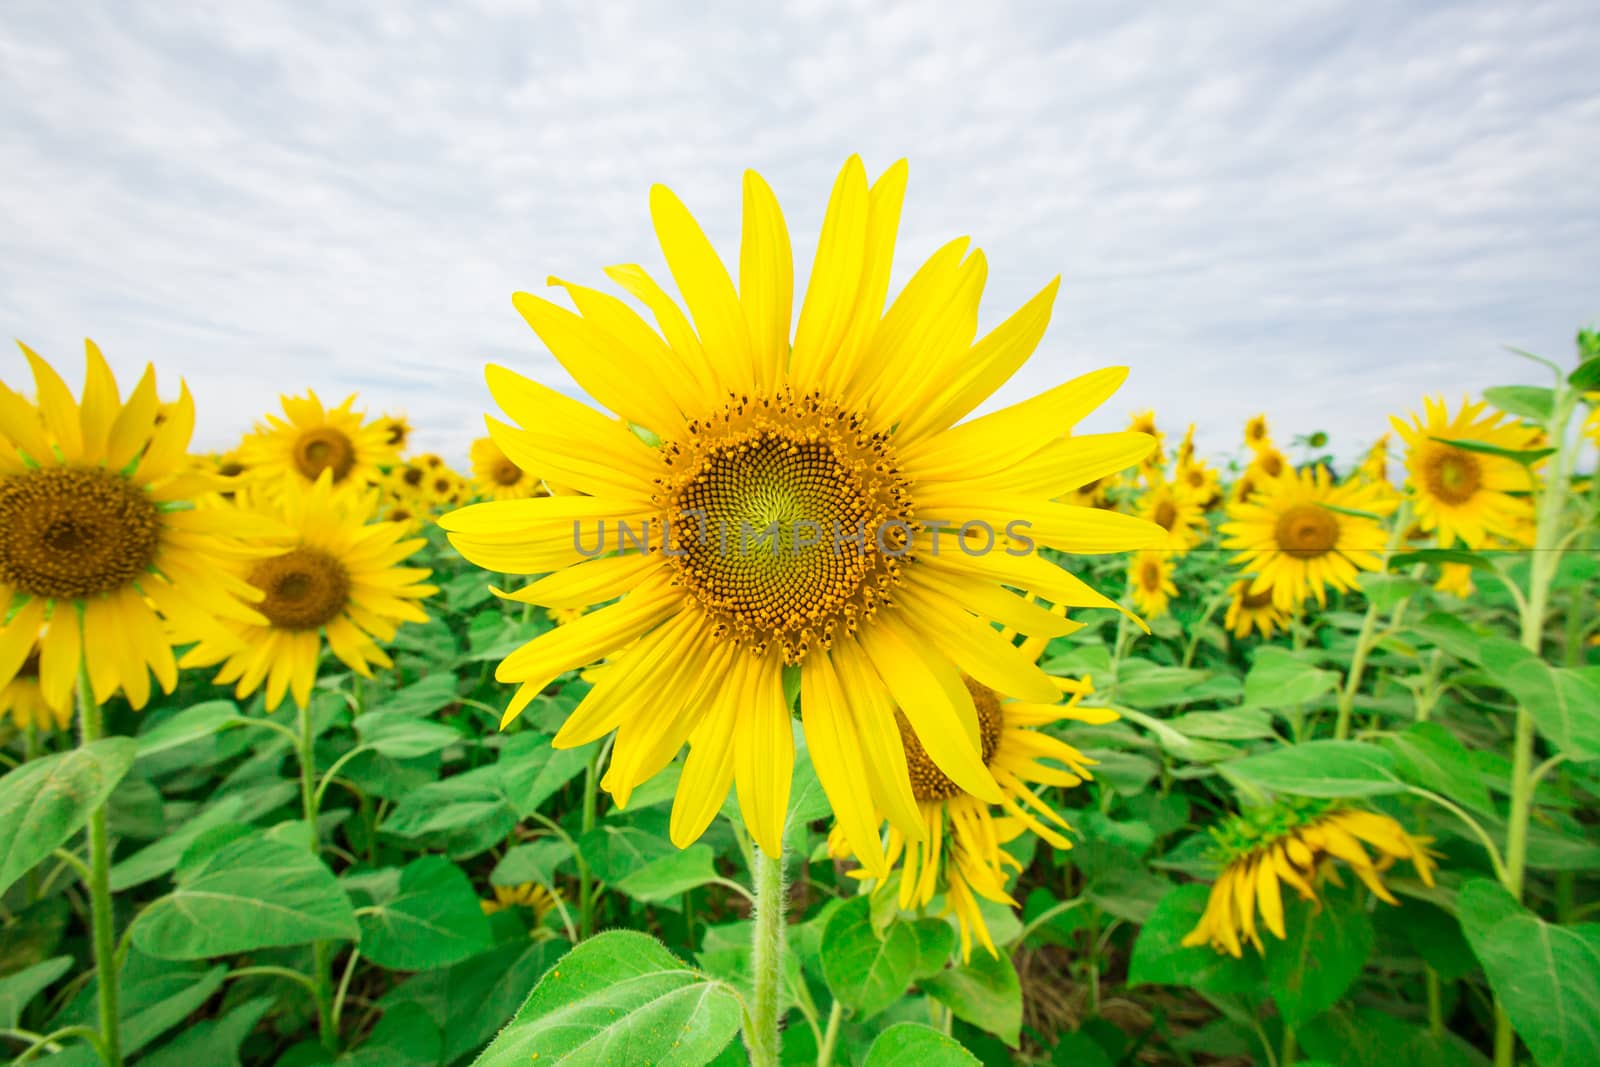 Sunflower fields in Lopburi Thailand.